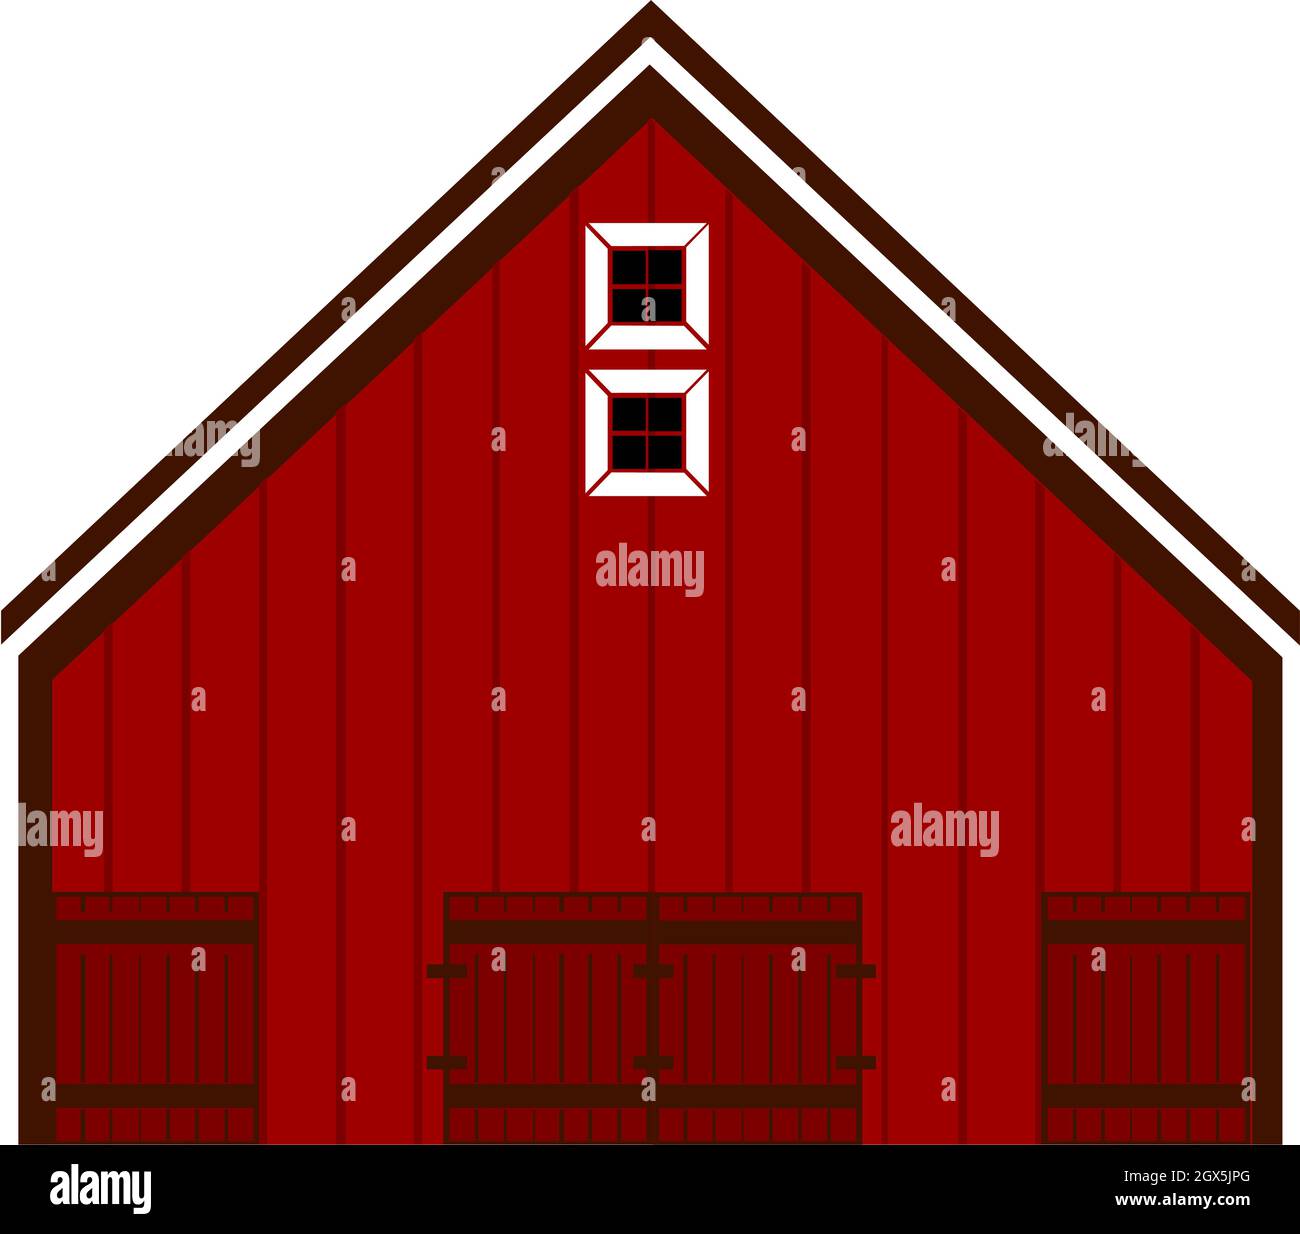 Rote Scheune Haus Illustration Vektor auf weißem Hintergrund Stock Vektor